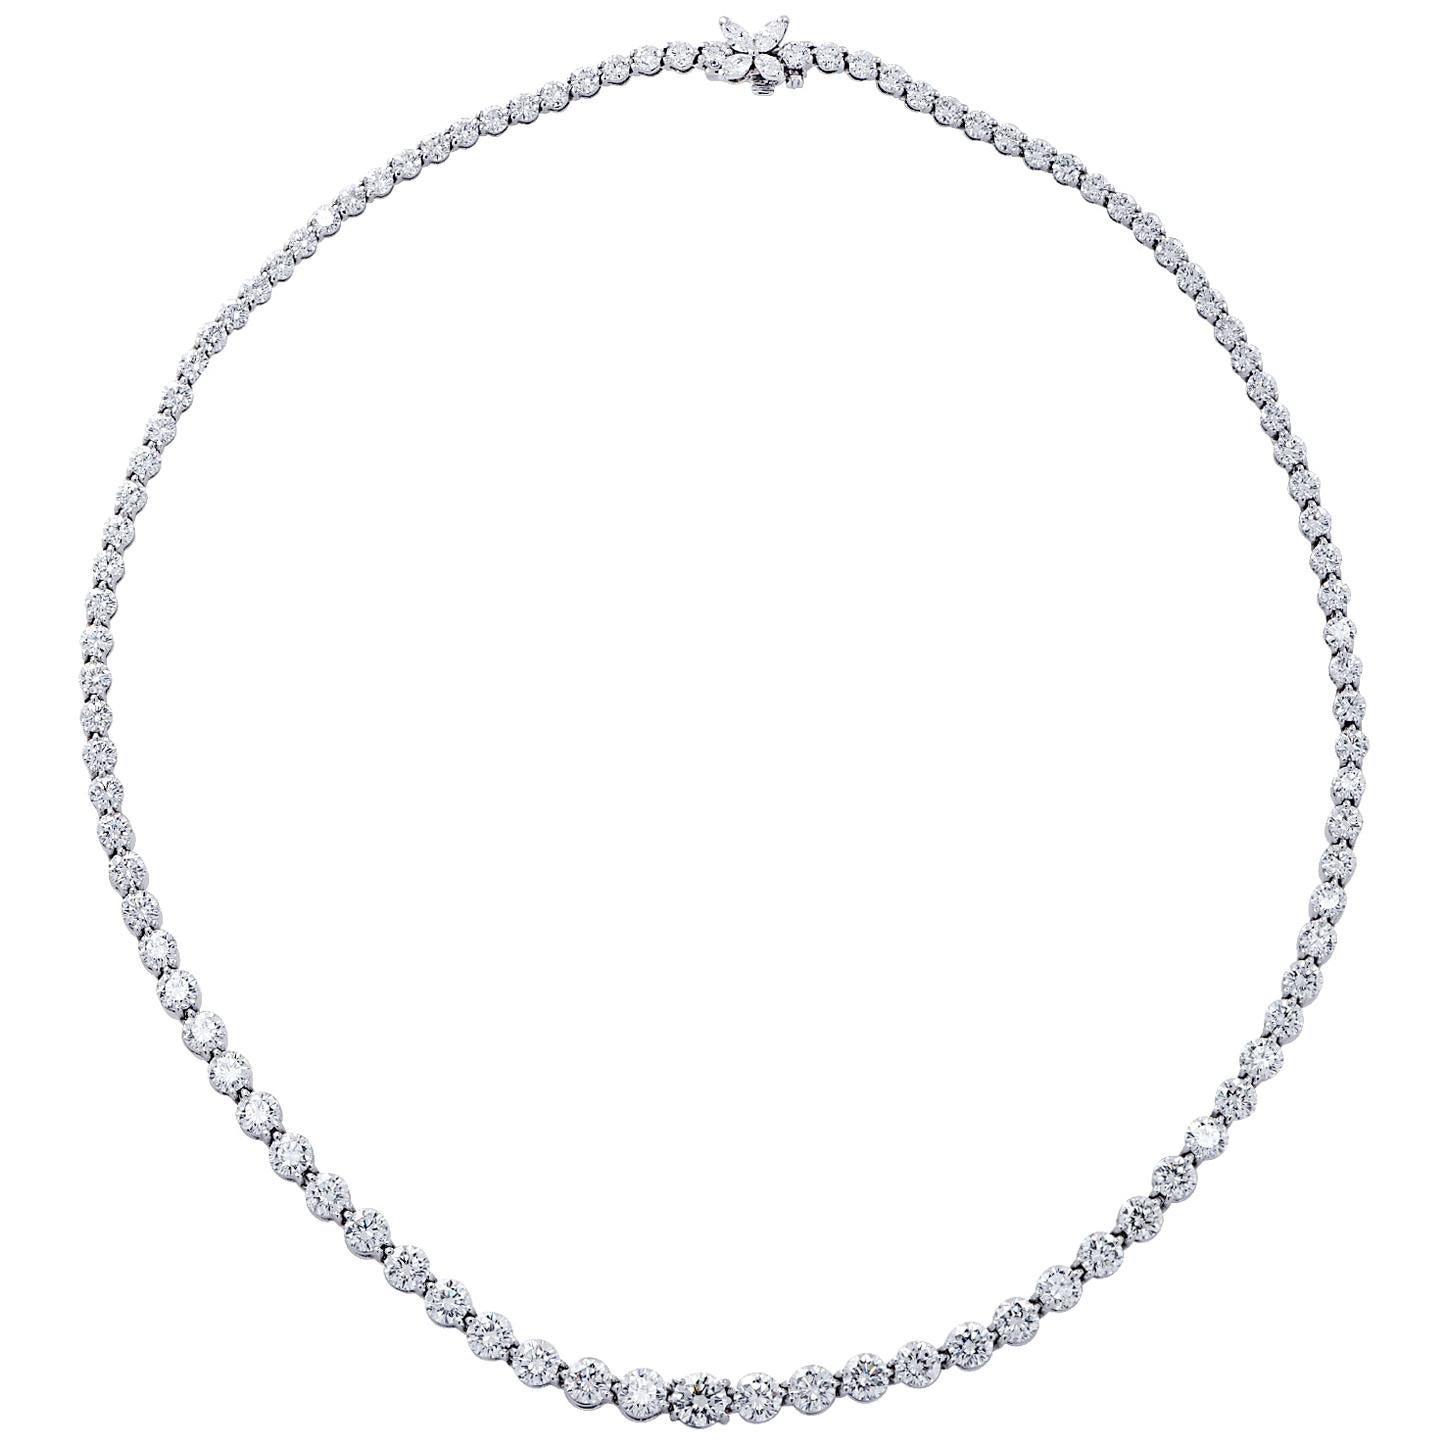 Tiffany & Co. Victoria 17.77 Carat Diamond Riviere Necklace